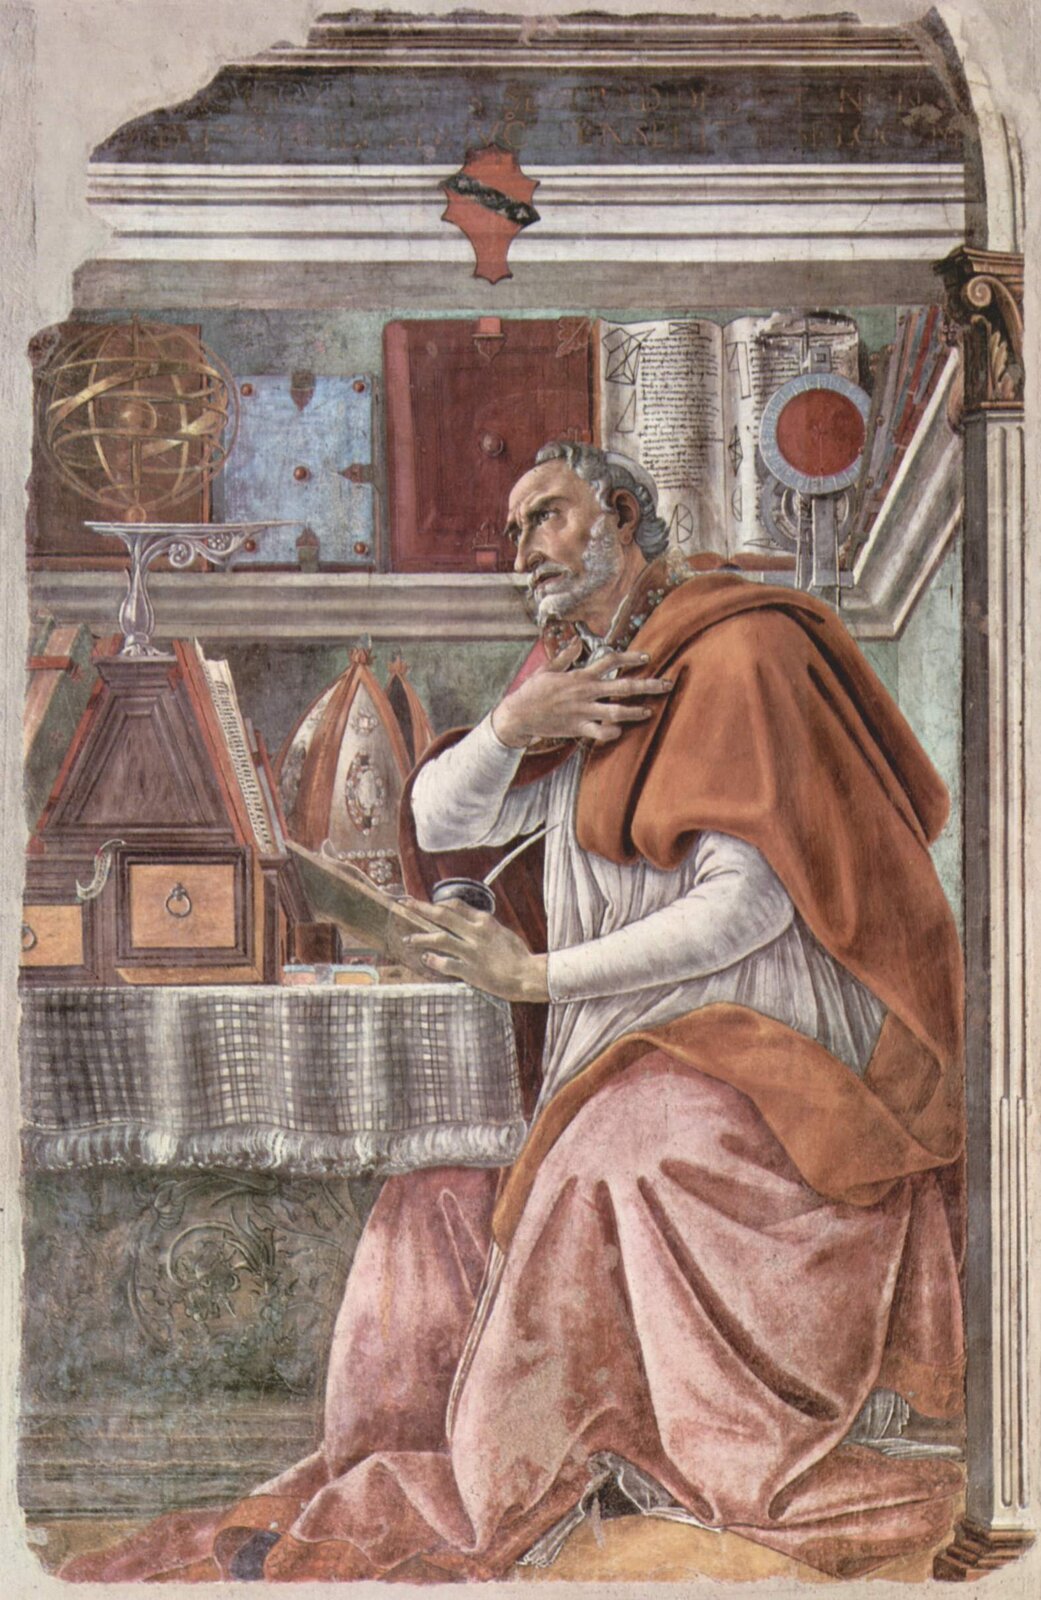 Obraz przedstawia starszego, siwowłosego mężczyznę z brodą, siedzącego przy stole. Mężczyzna ubrany jest w szaty biskupie. Na stole stoi tiara. Mężczyzna opiera lewą rękę o stół. Prawą rękę trzyma na piersiach. 